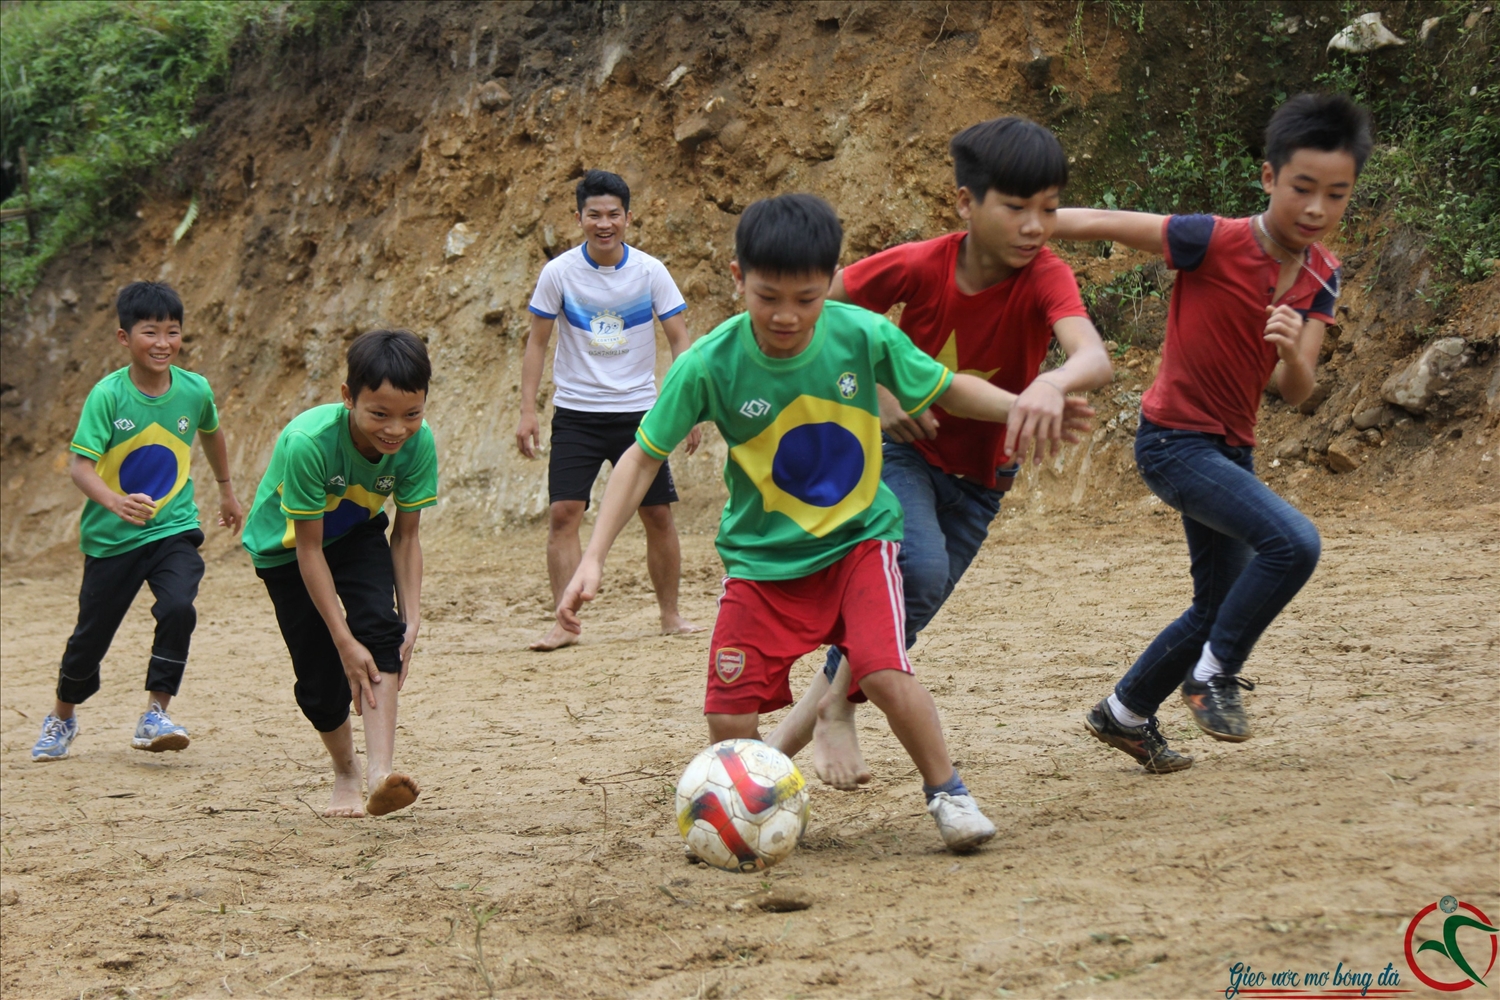 Các lớp bóng đá được thành lập và duy trì đều đặn để các em nhỏ được tập bóng đá thường xuyên